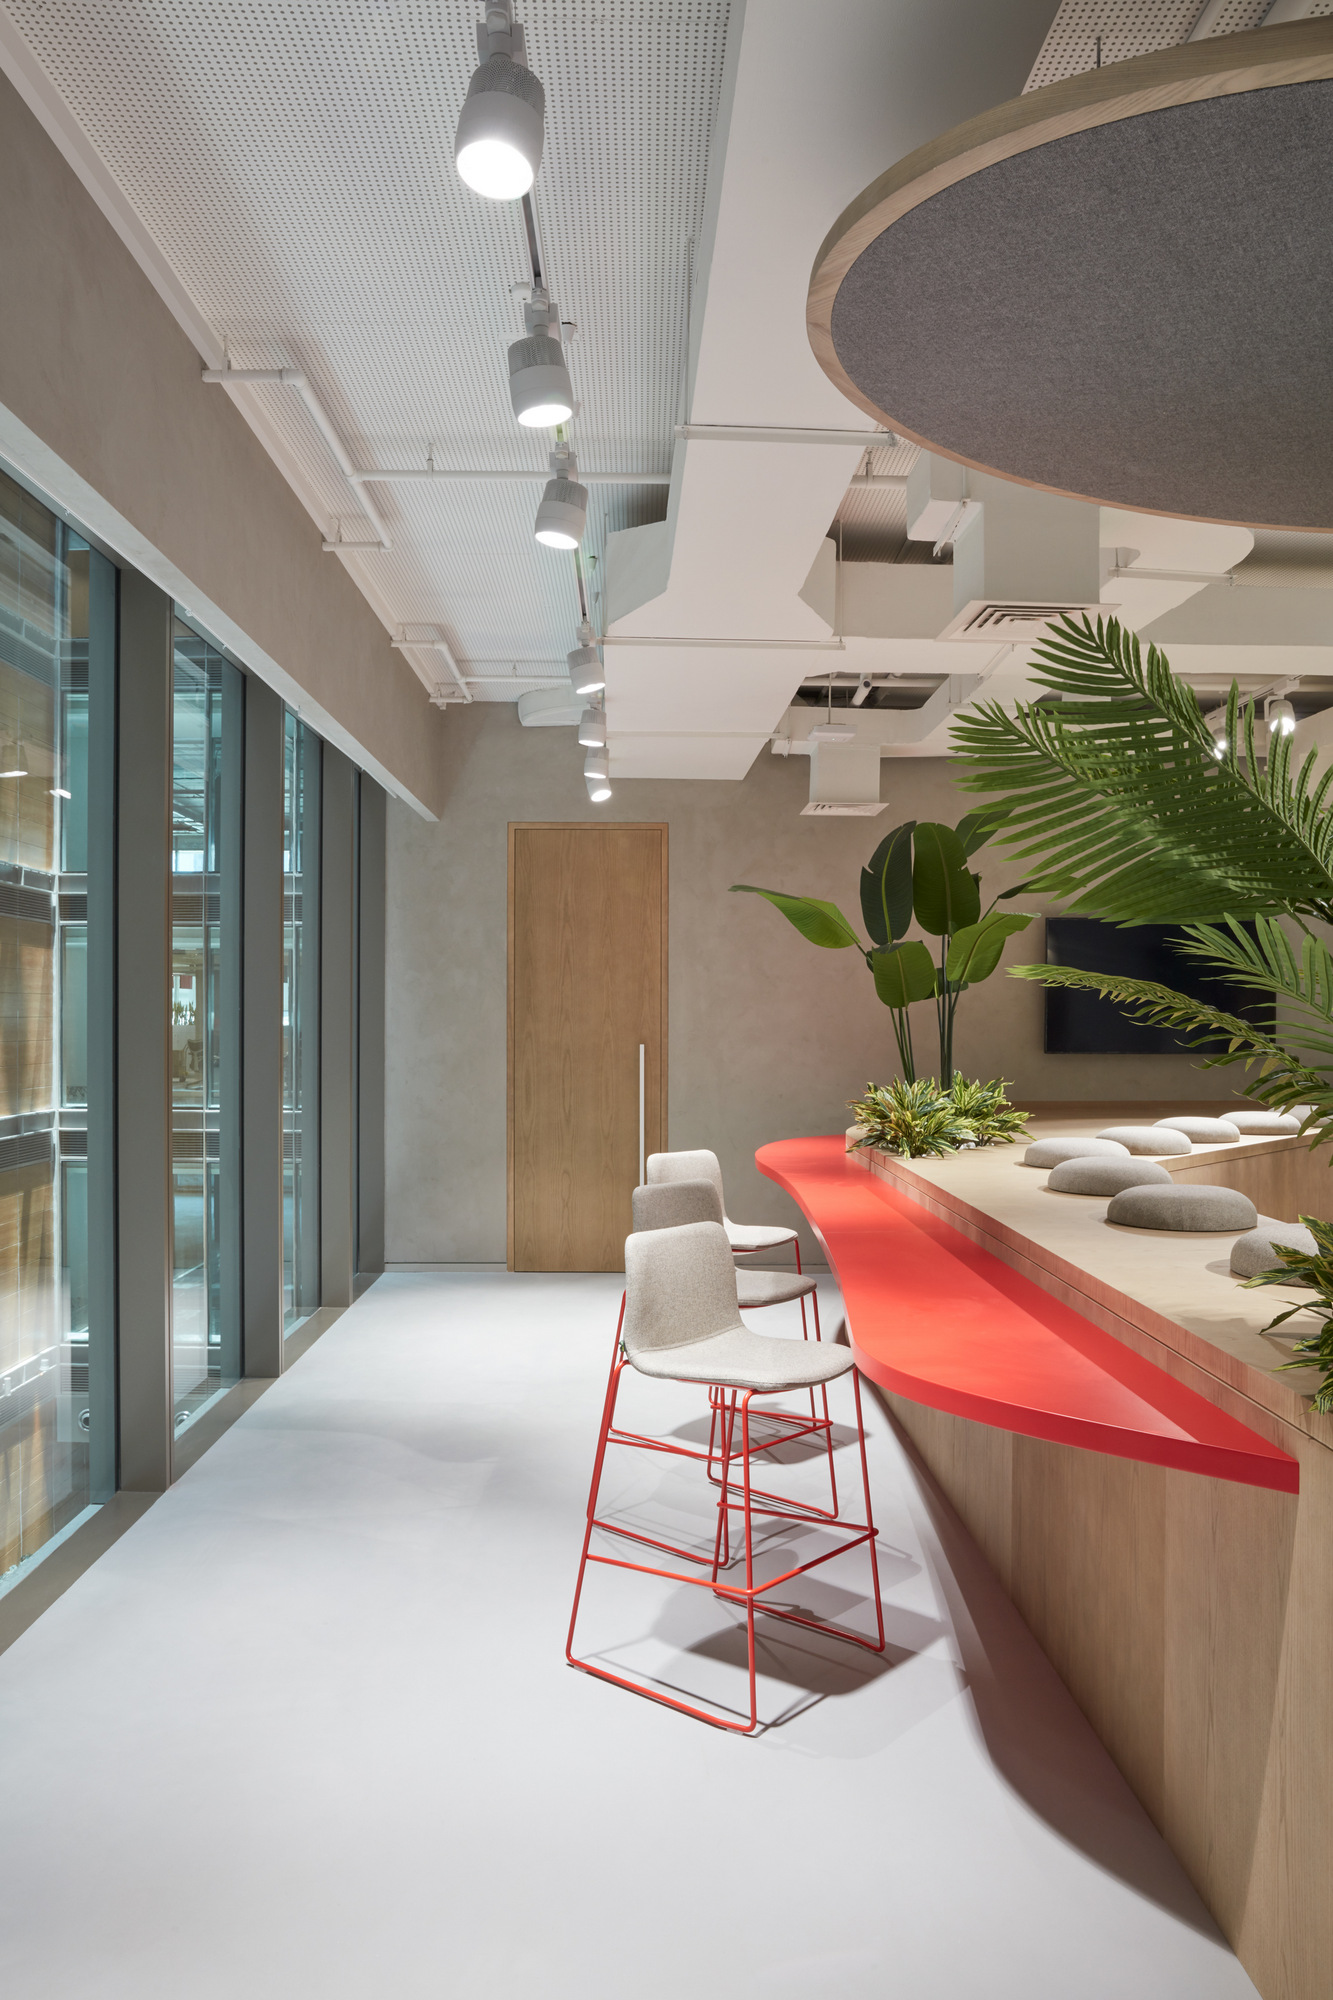 图片[7]|武田制药公司迪拜办事处|ART-Arrakis | 建筑室内设计的创新与灵感